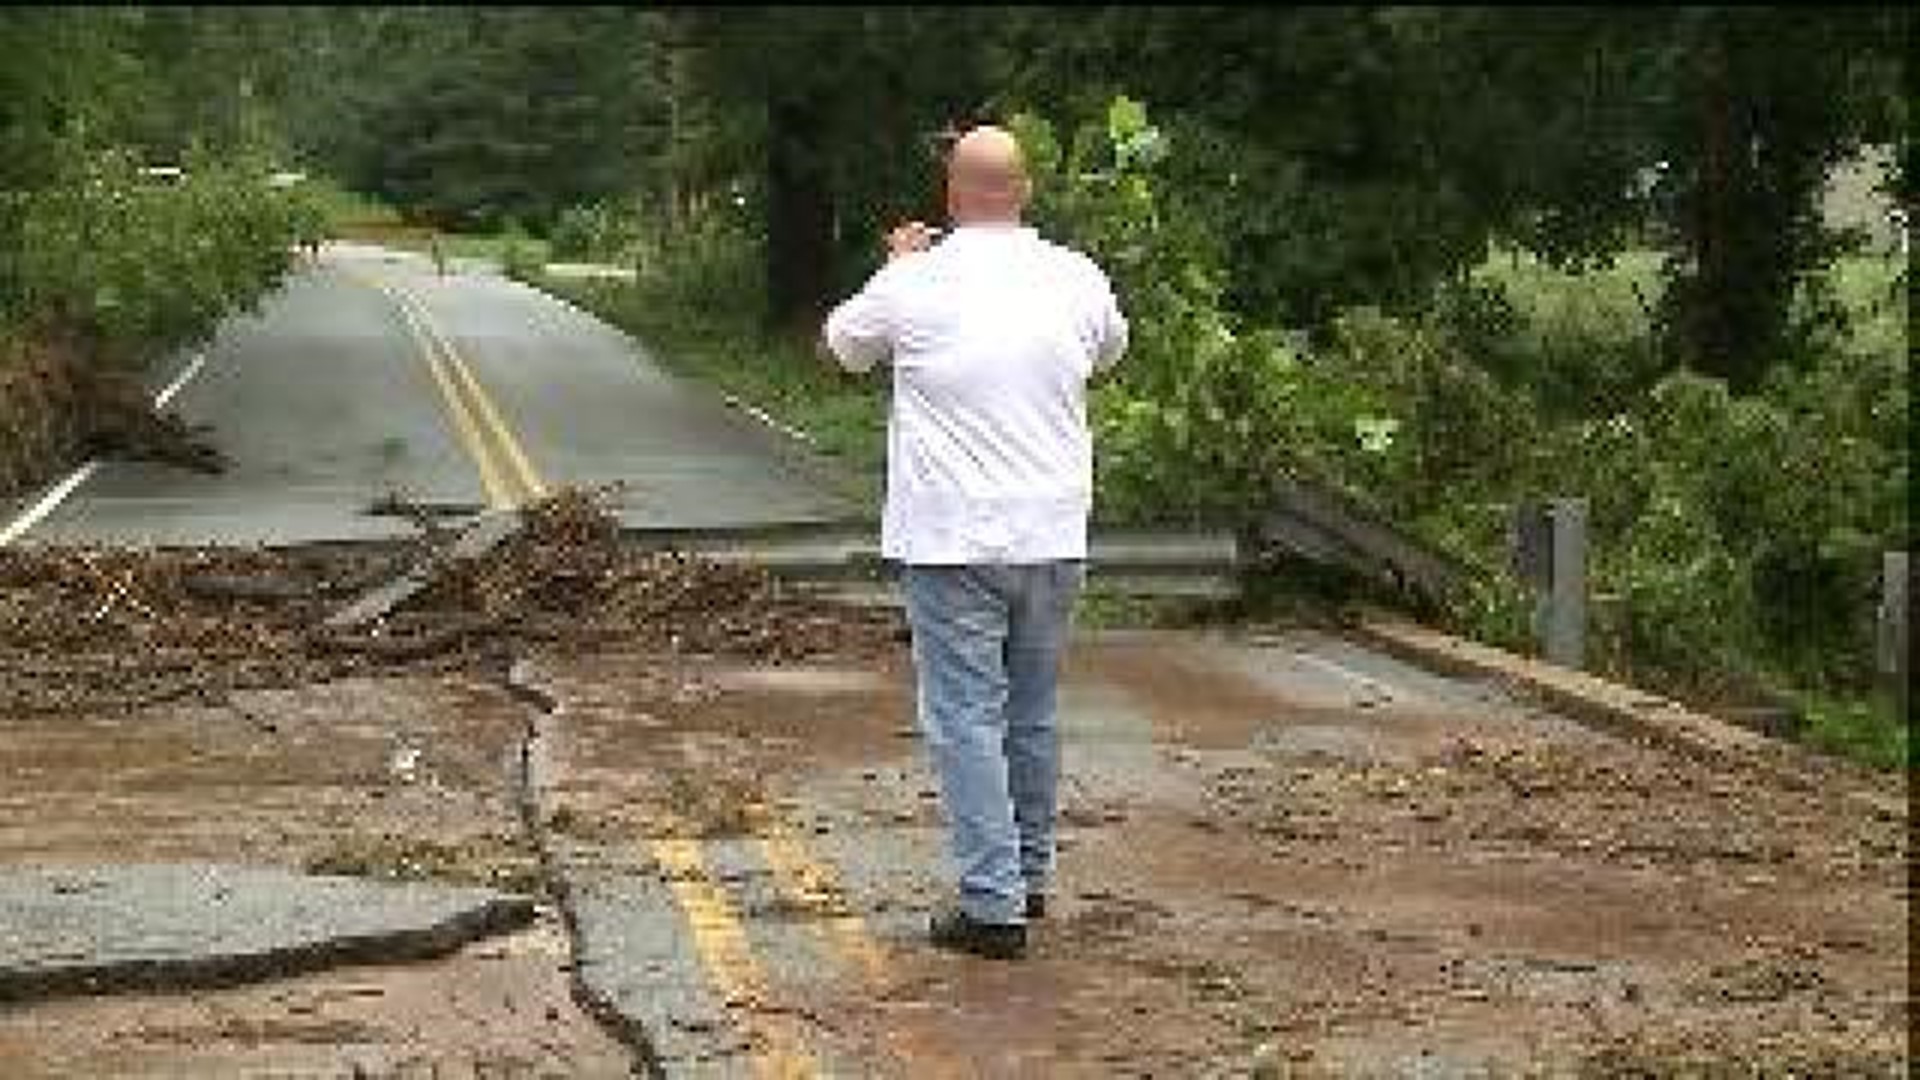 Benton County Surveys Road Damage